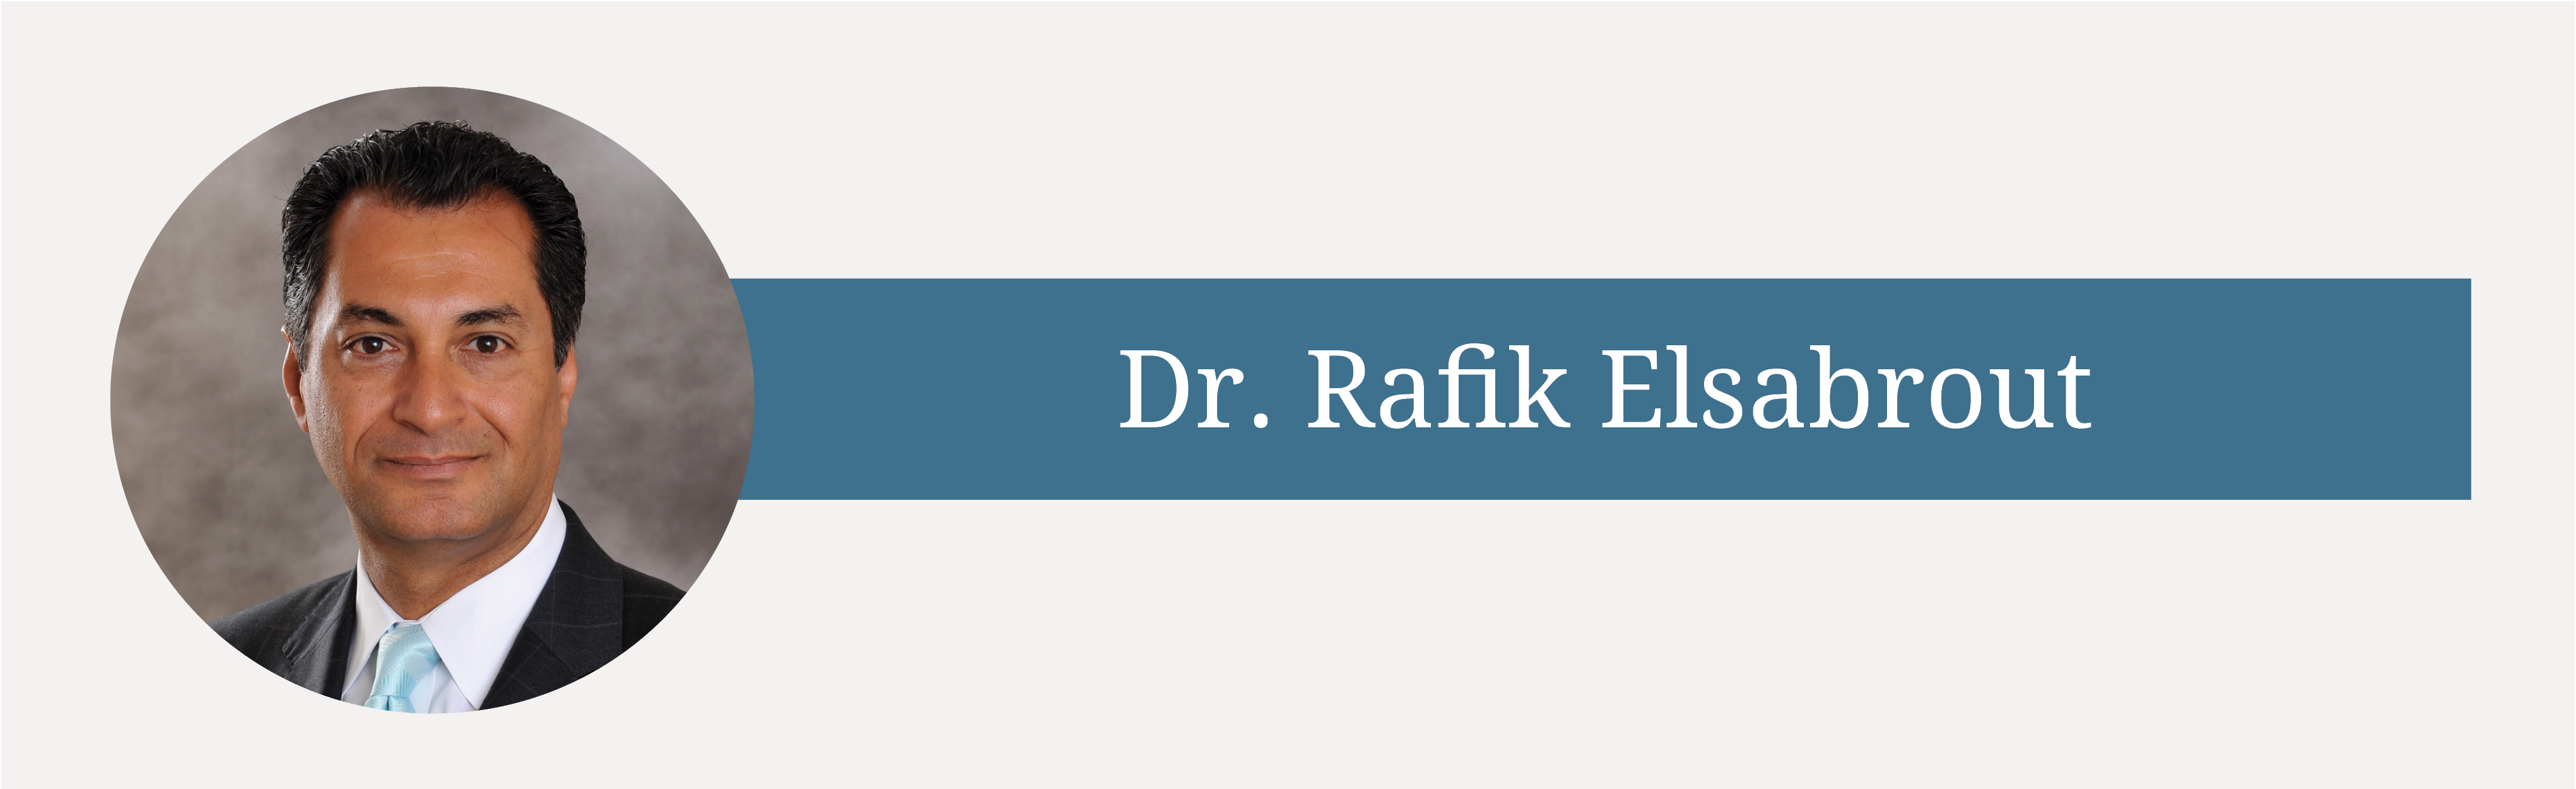 General Surgeon Dr. Rafik A. Elsabrout Joins White Plains Hospital